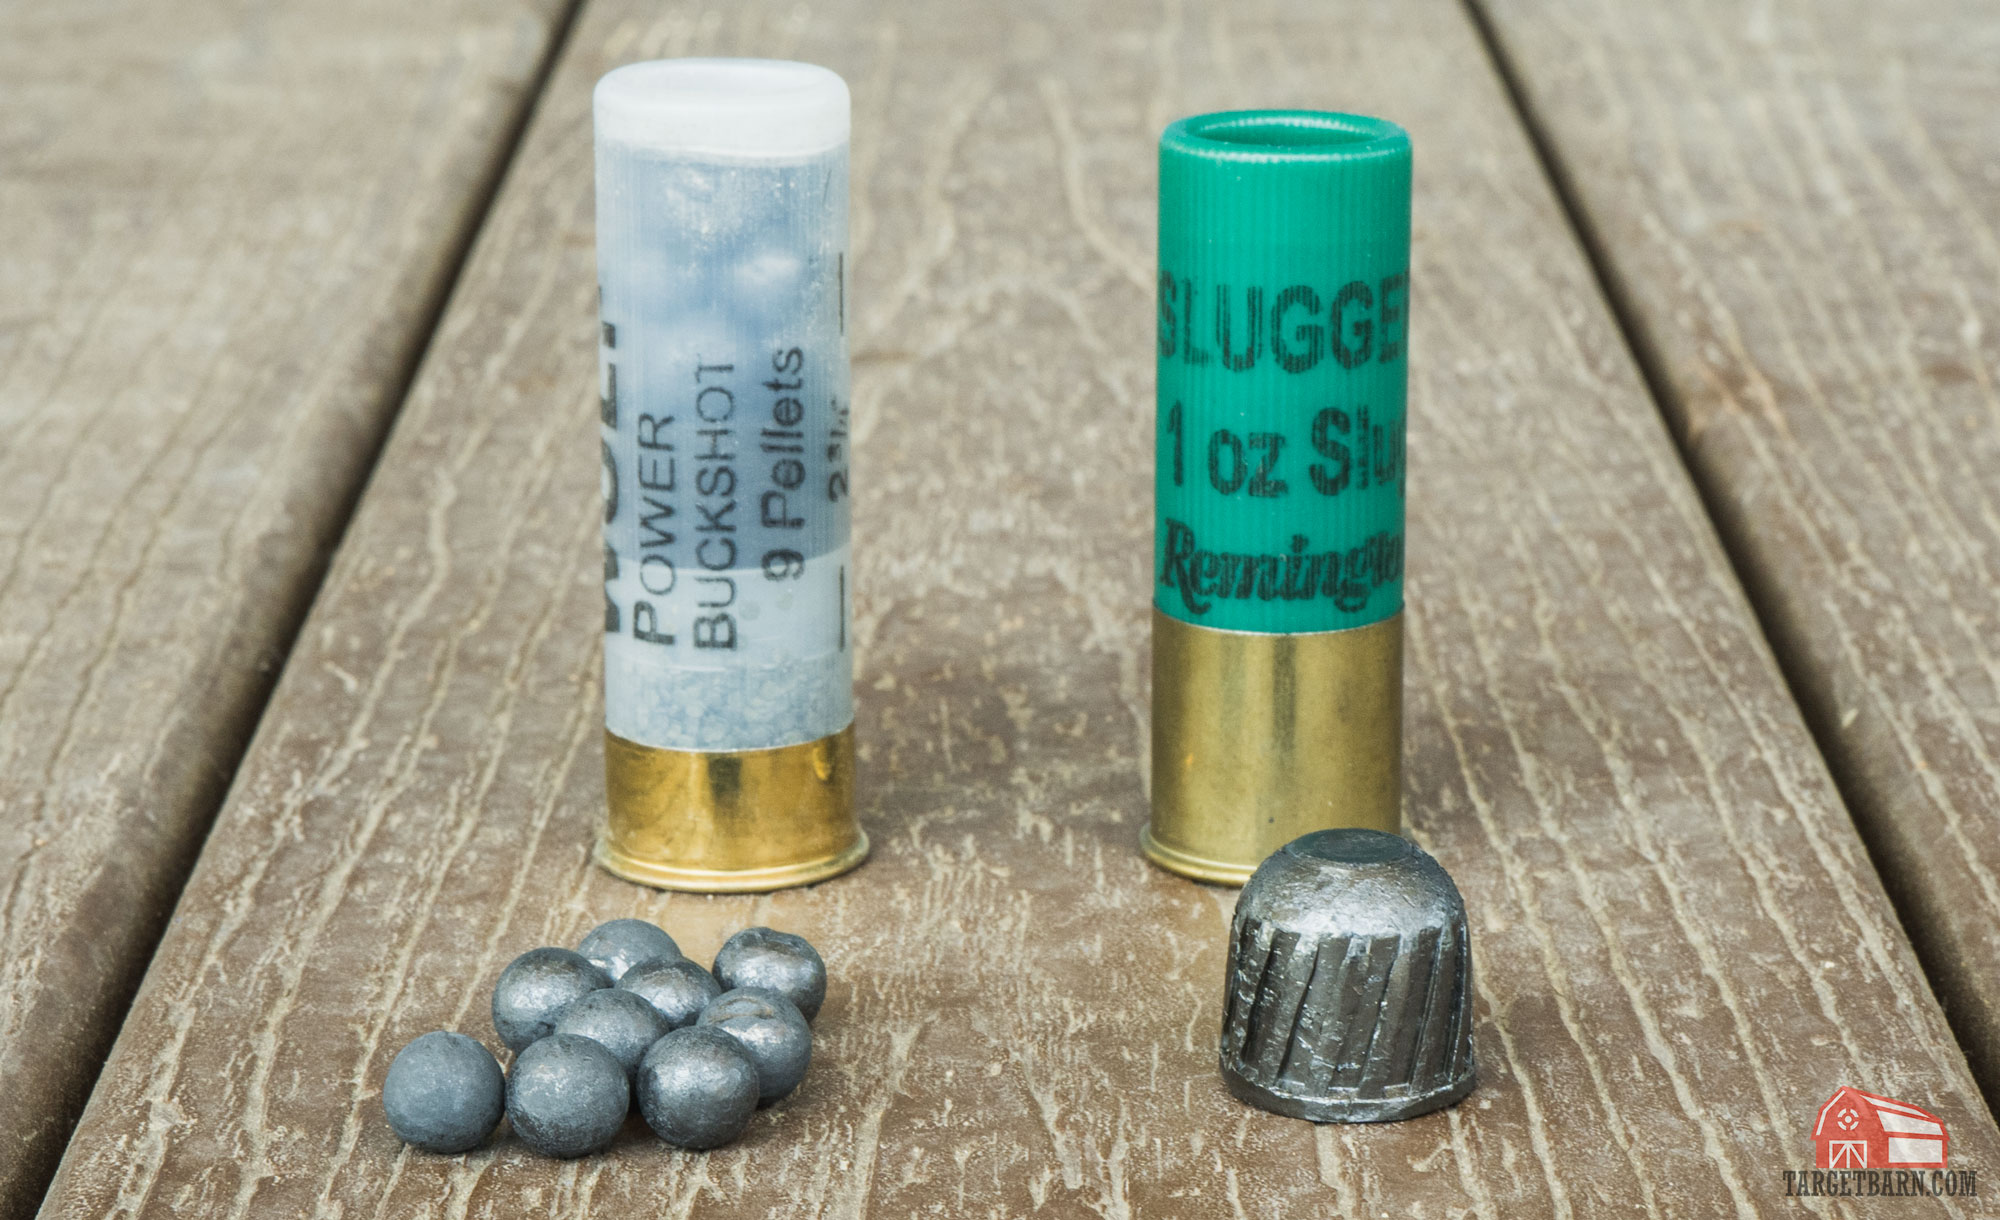 Buckshot vs. Slug - Best Shotgun Shells for Home Defense.